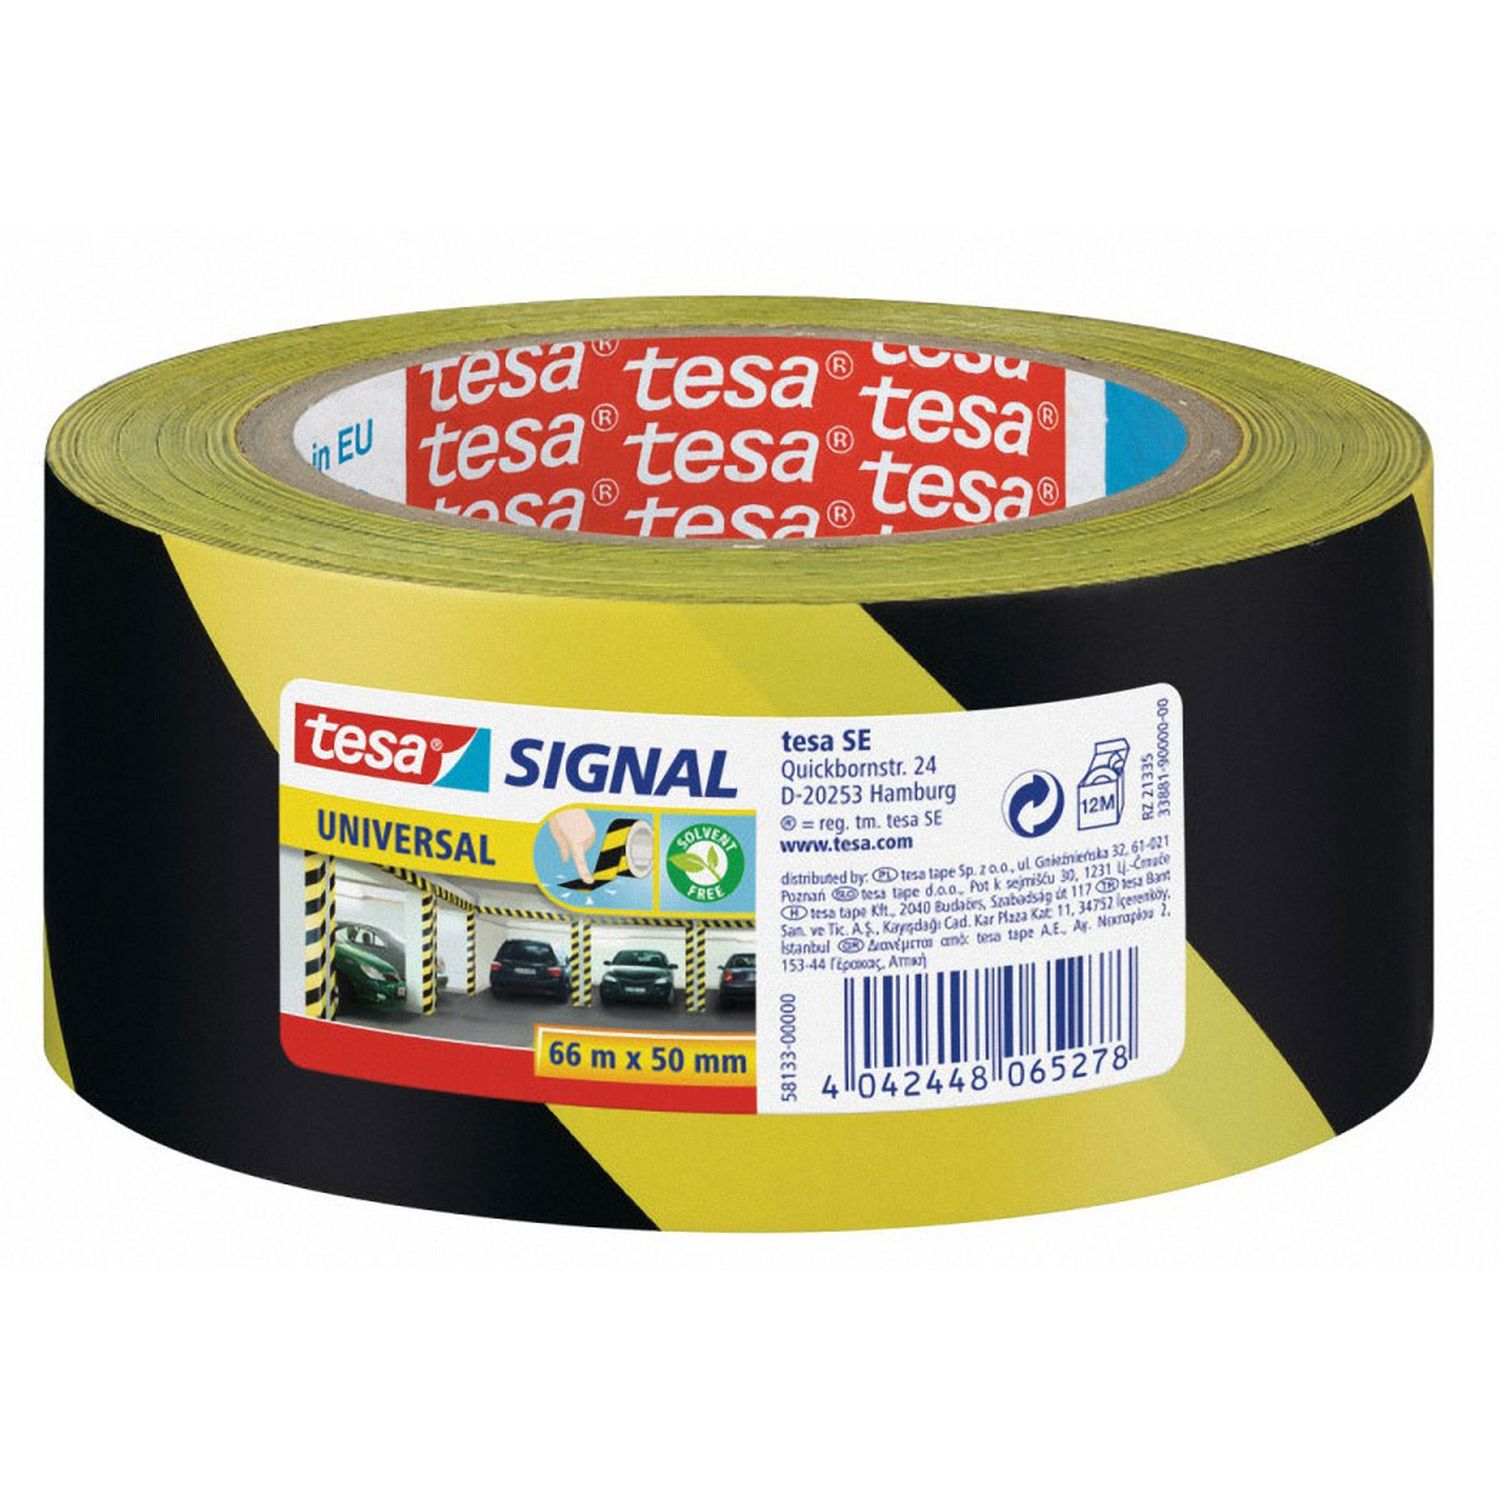 TESA Signalband Markierungsband Warnklebeband gelb / schwarz 58133, 50mm x 66 m